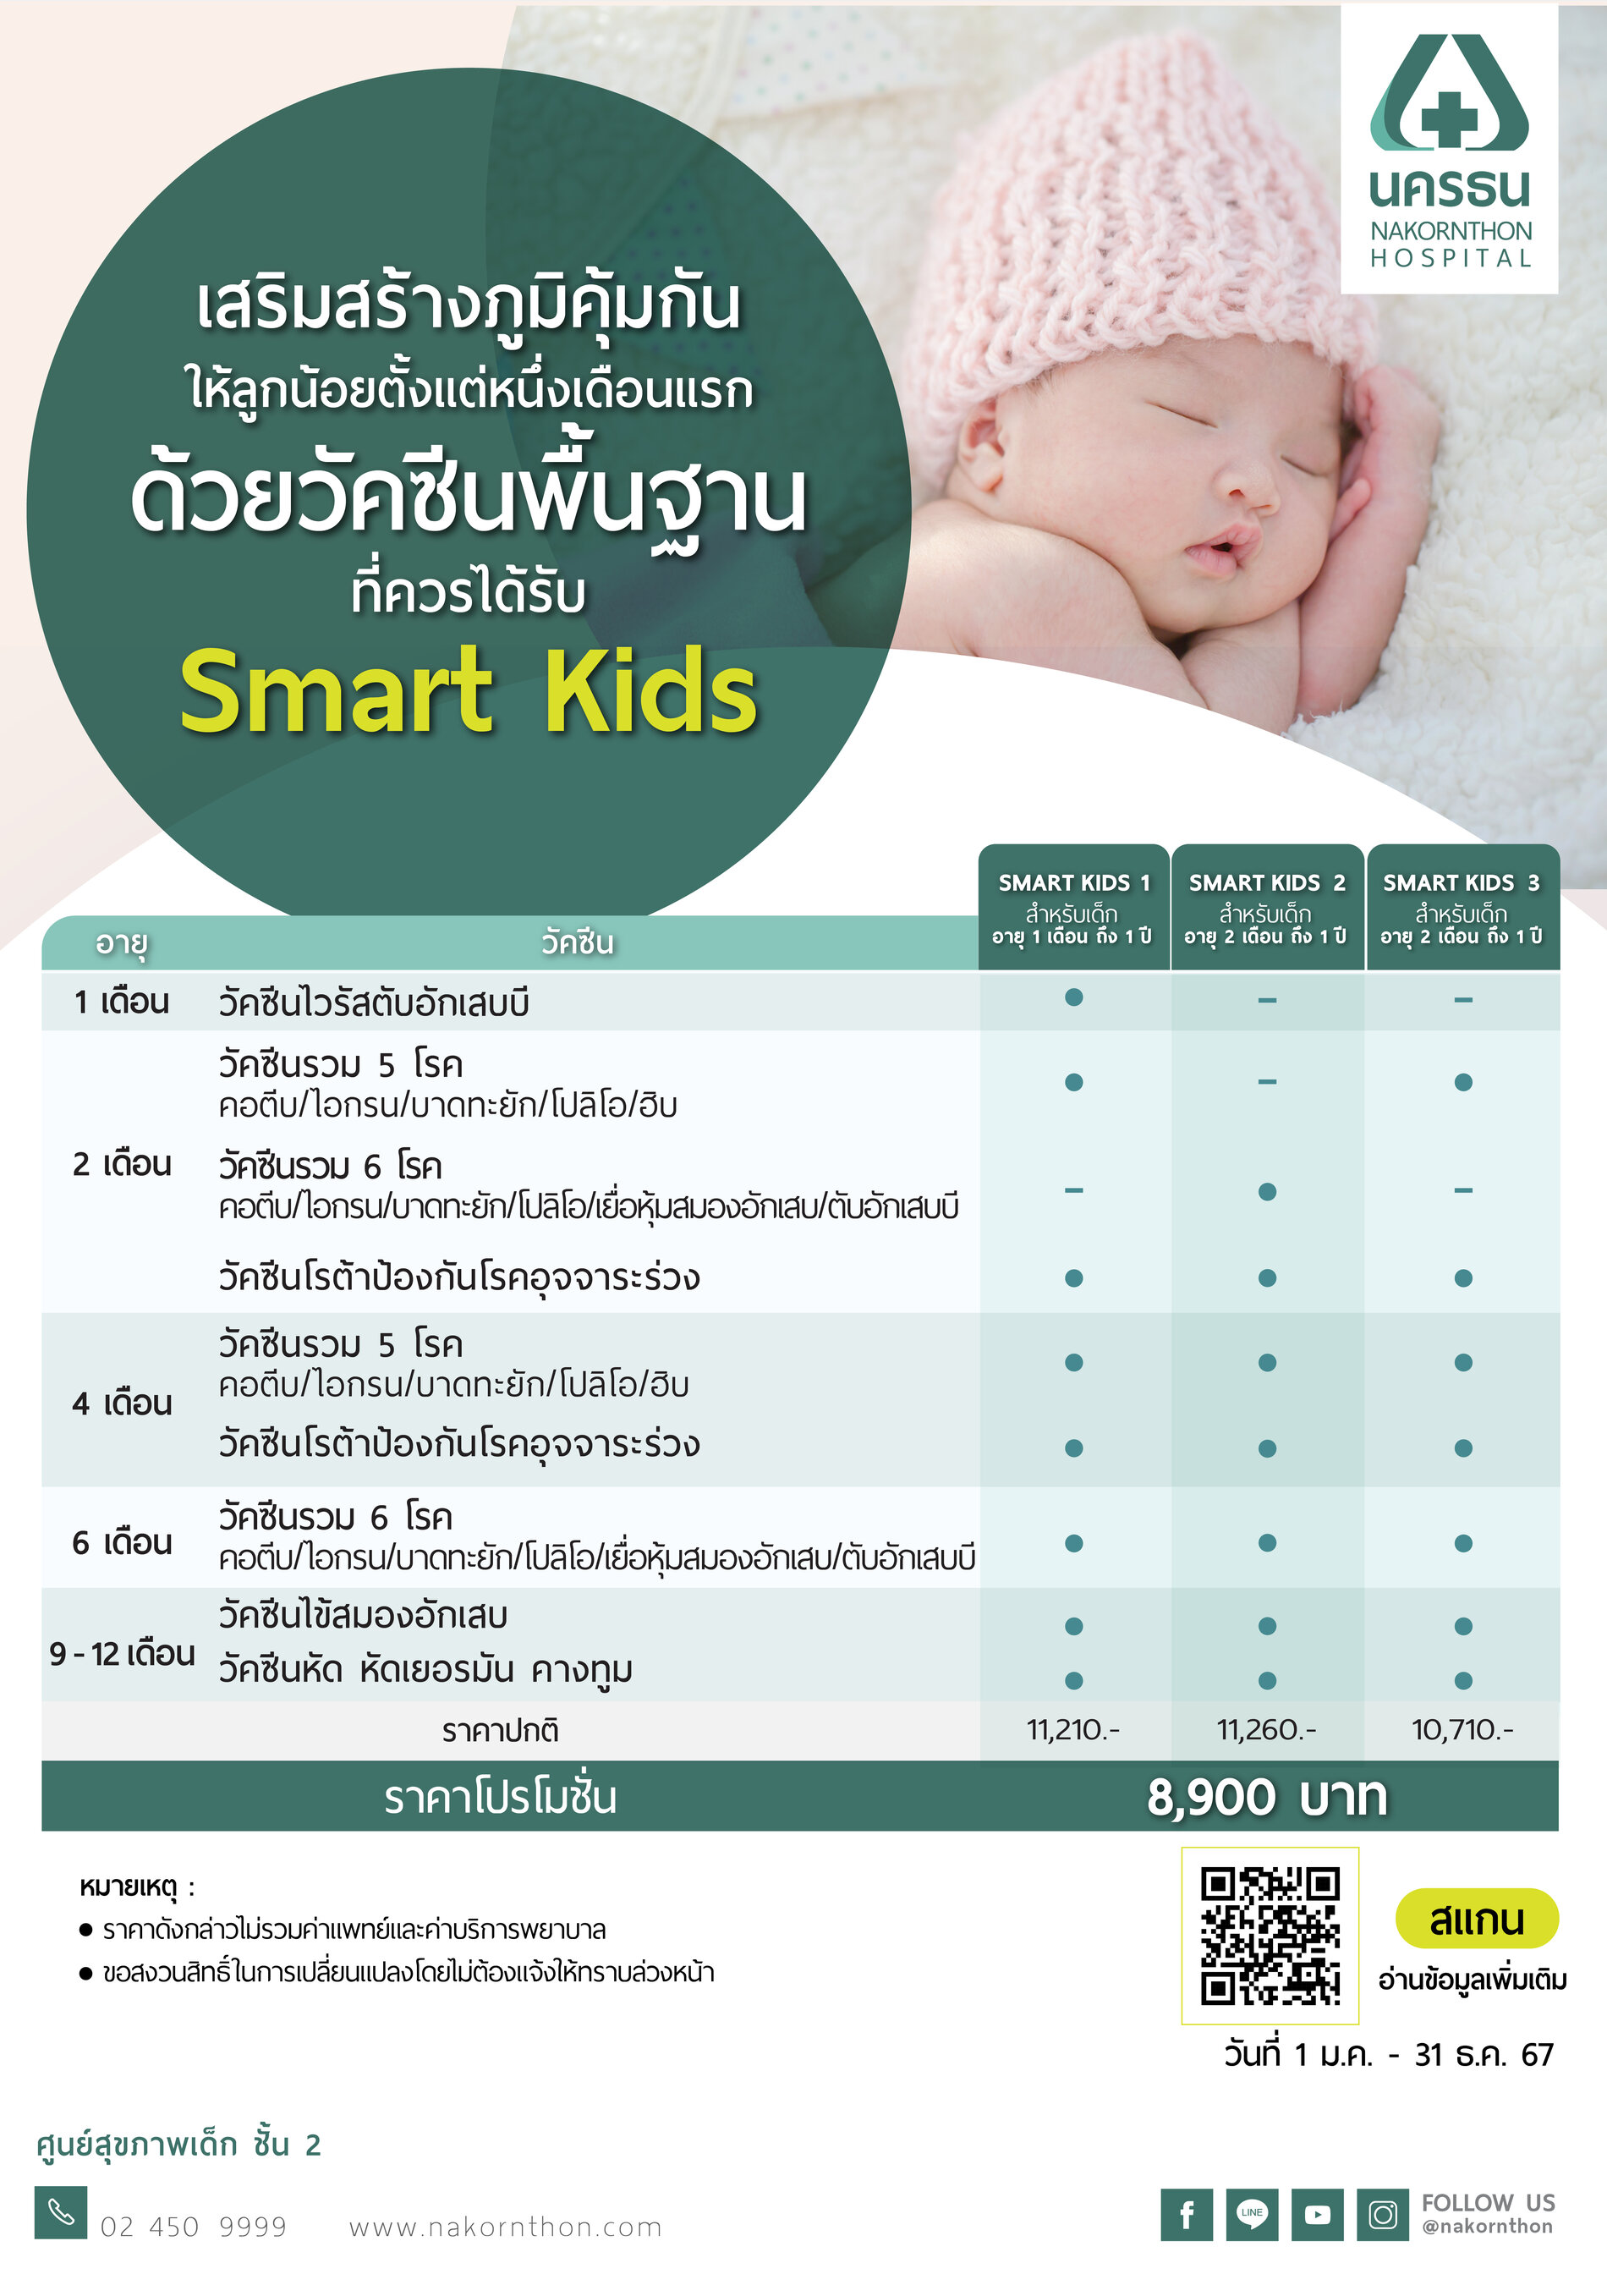 แพ็กเกจวัคซีนพื้นฐาน Smart Kids (สำหรับเด็กอายุ 1 เดือน - 1 ปี)